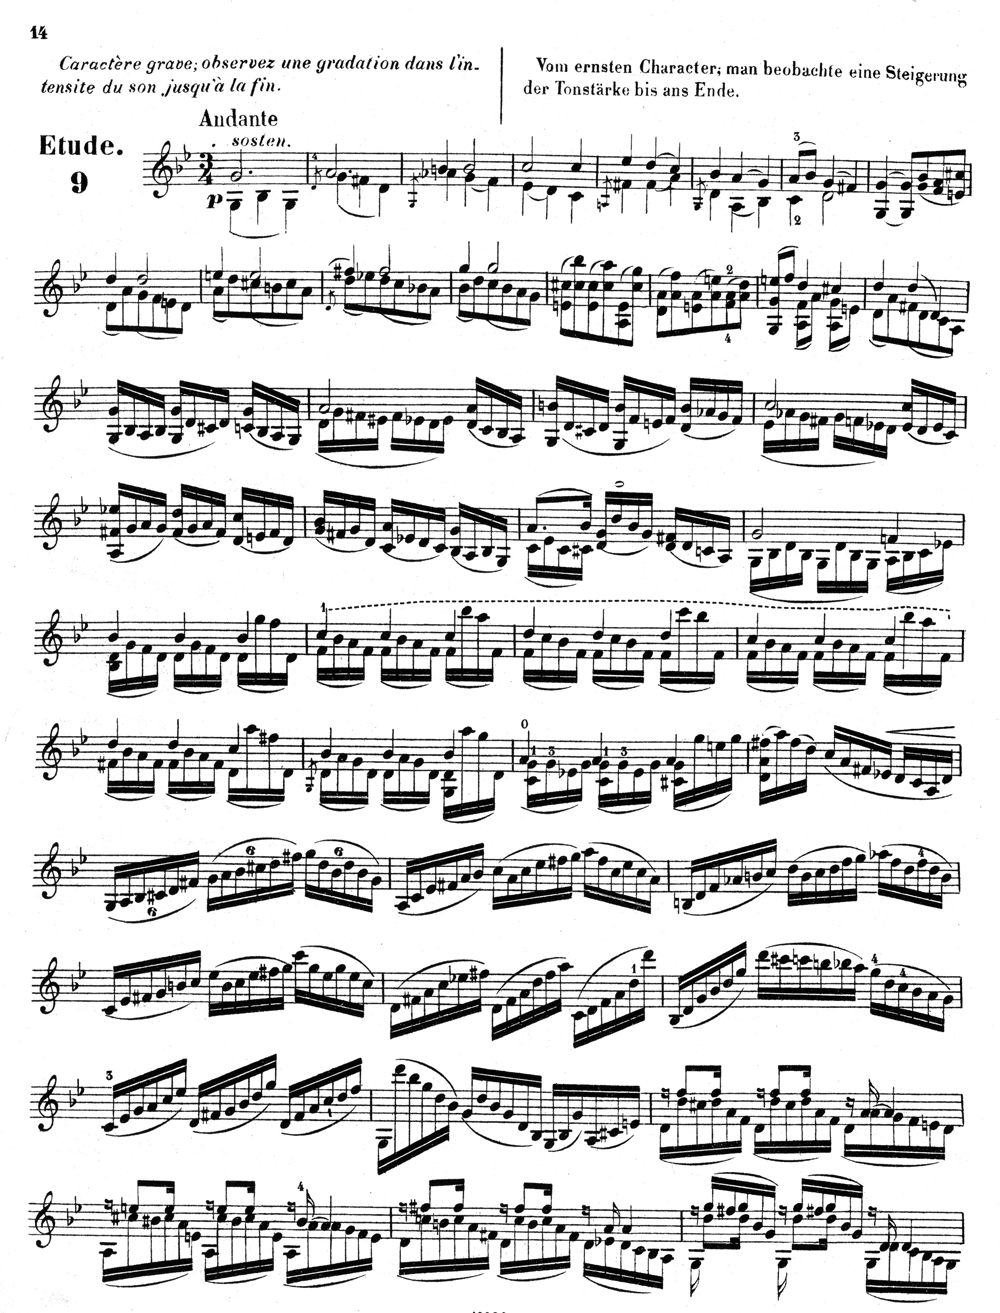 Violon enfant avancé fait main 1/4 violon violon fractionné violon